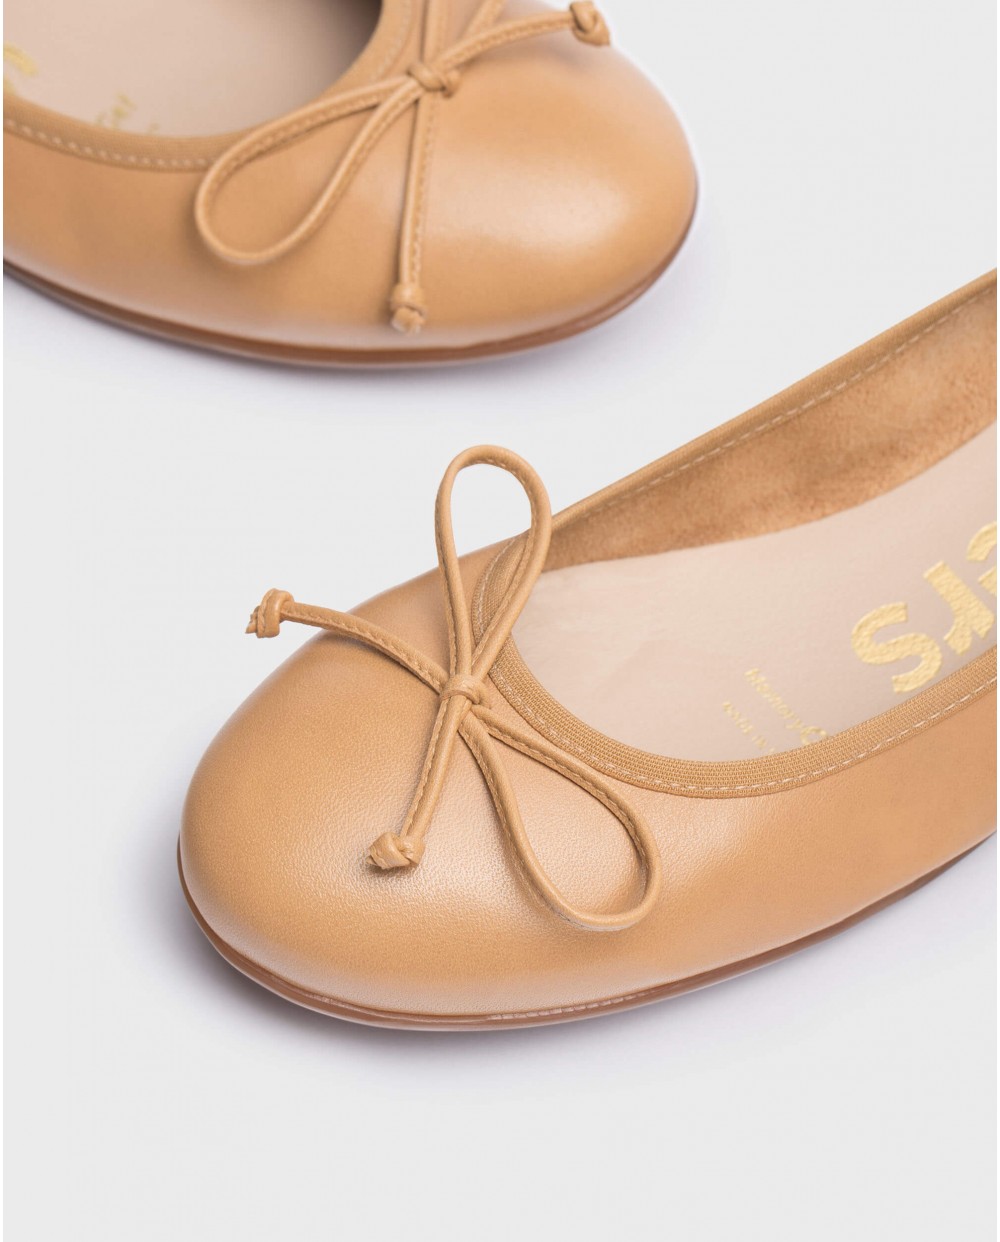 Wonders-Flat Shoes-Brown Bo Ballet pump